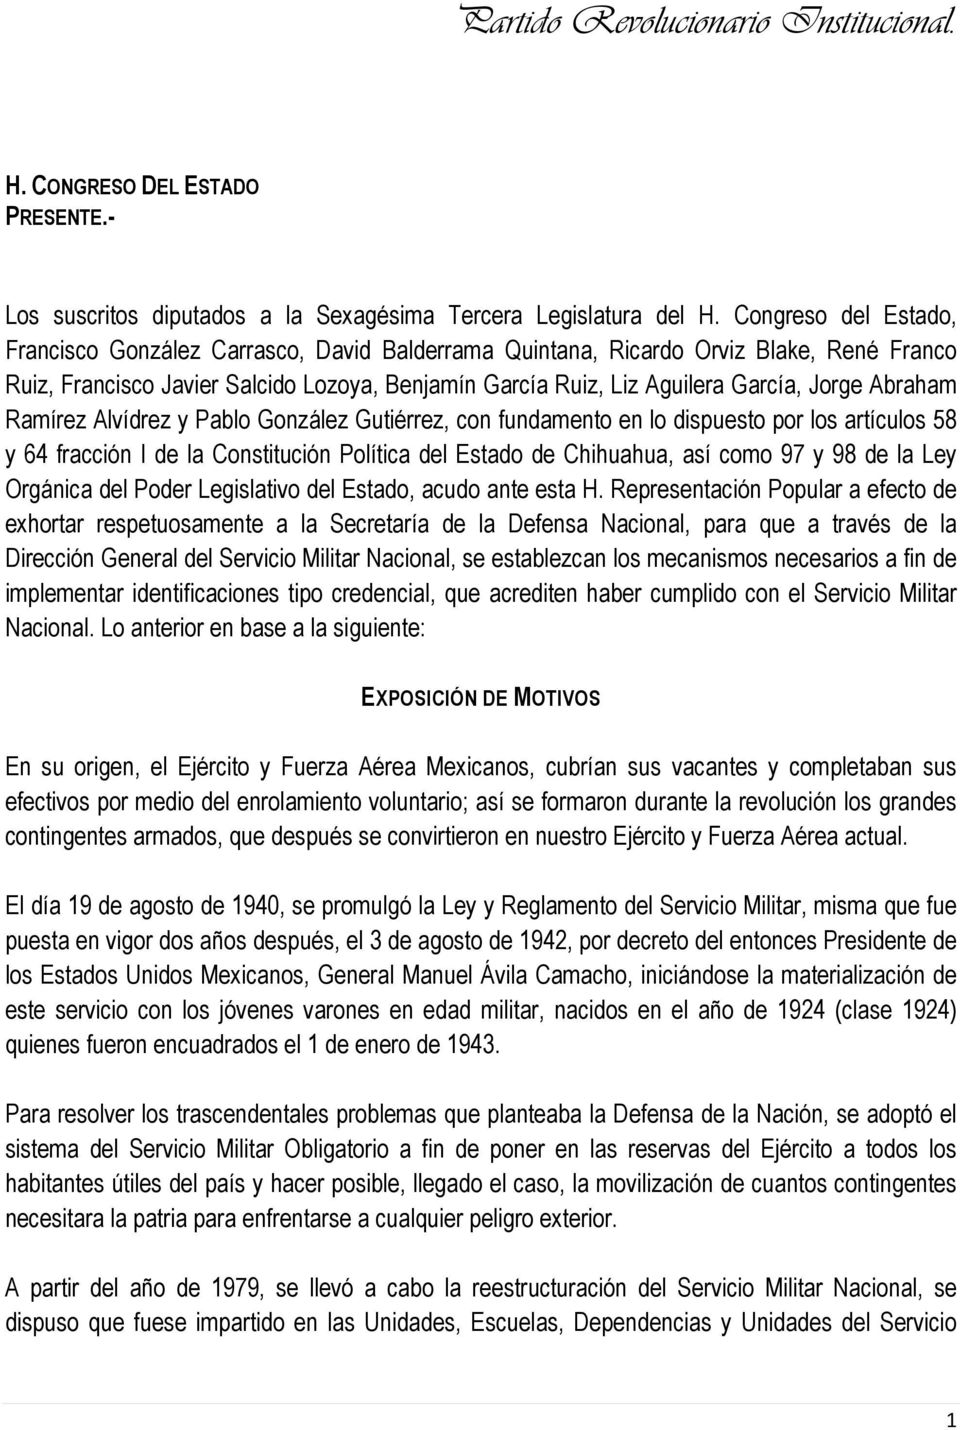 Abraham Ramírez Alvídrez y Pablo González Gutiérrez, con fundamento en lo dispuesto por los artículos 58 y 64 fracción I de la Constitución Política del Estado de Chihuahua, así como 97 y 98 de la